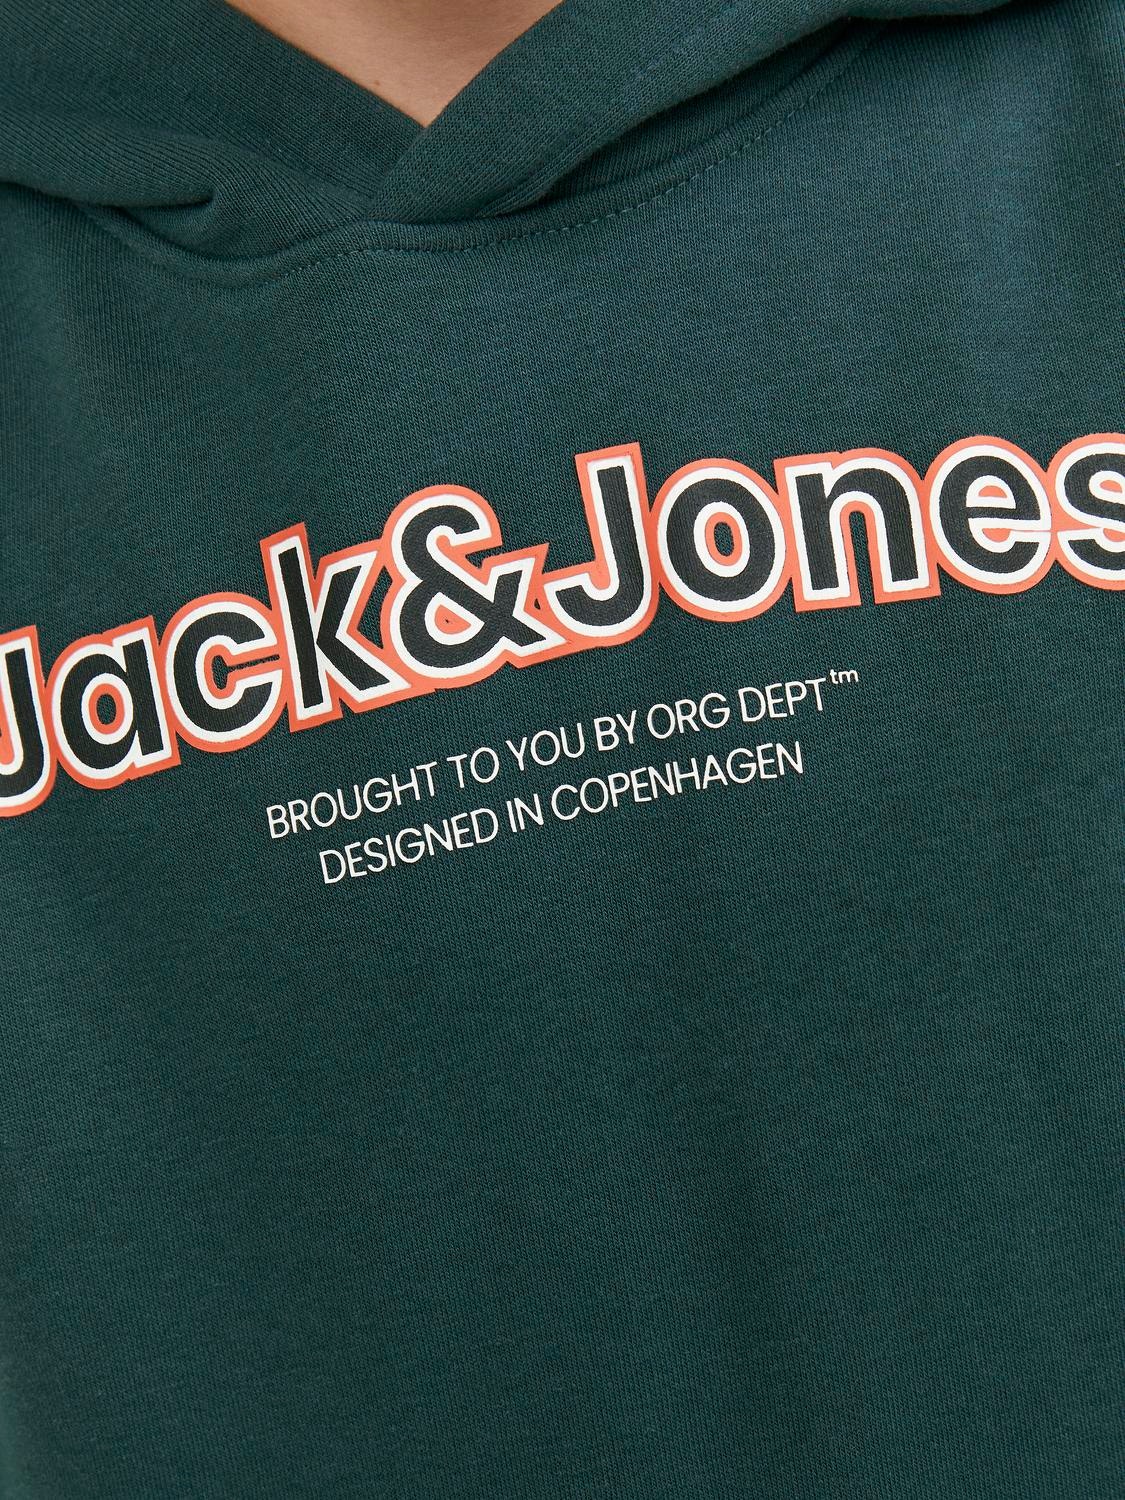 Jack & Jones Sweat à capuche Logo Pour les garçons -Magical Forest - 12247614